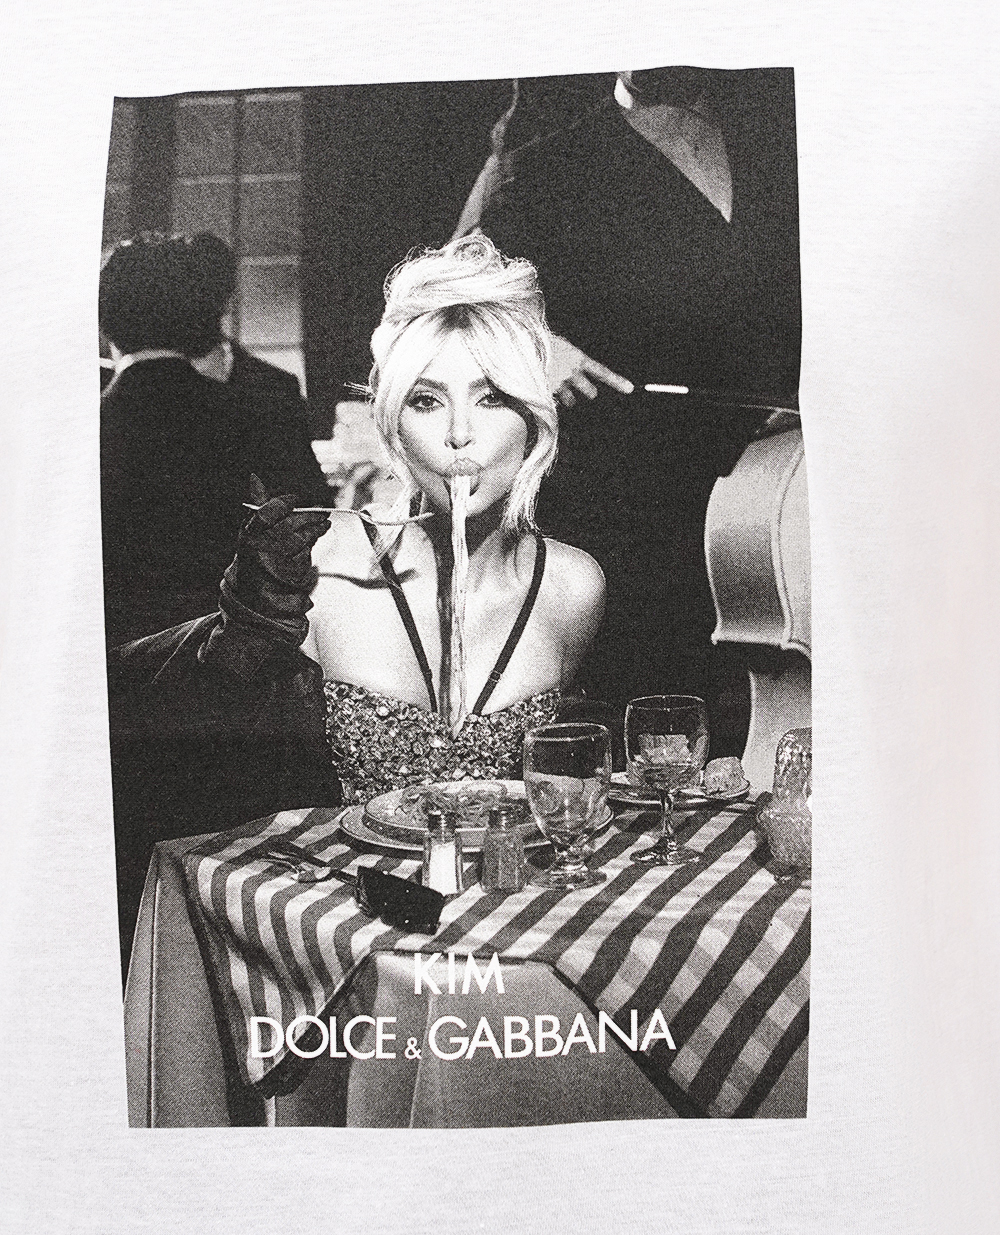 Футболка Ciao, Kim Dolce&Gabbana I8AMYW-G7JL8, белый цвет • Купить в интернет-магазине Kameron